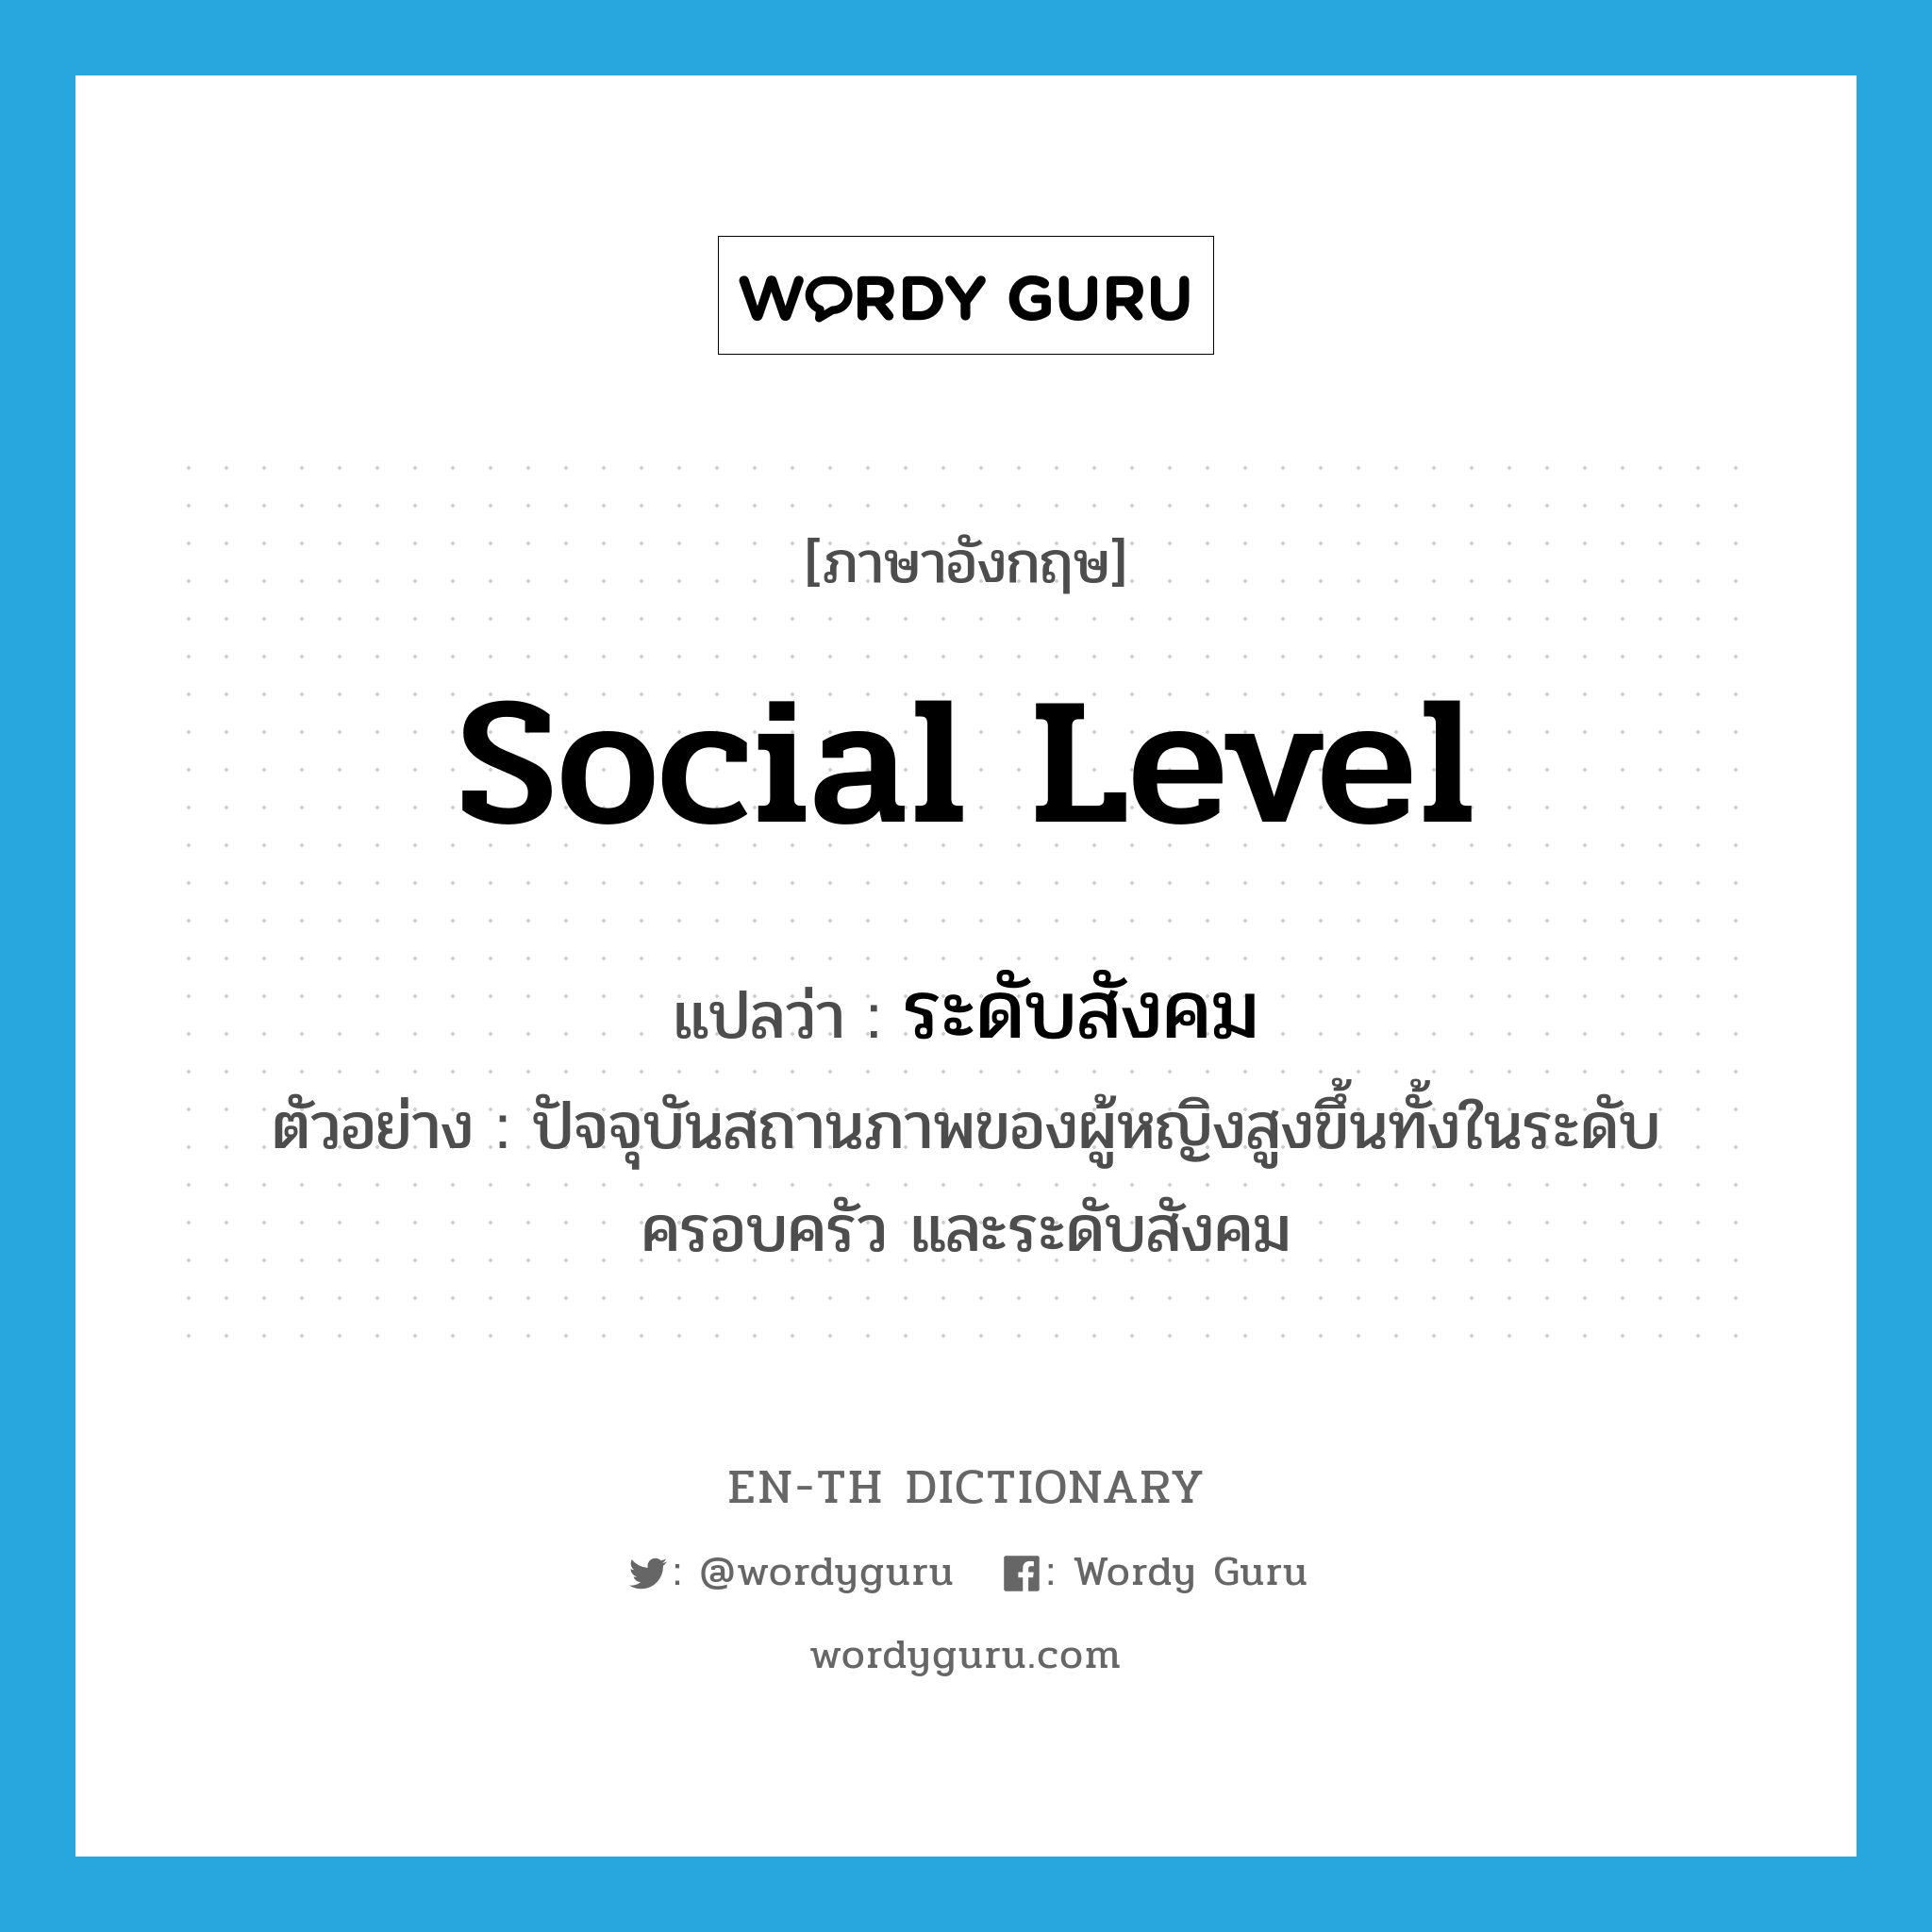 social level แปลว่า?, คำศัพท์ภาษาอังกฤษ social level แปลว่า ระดับสังคม ประเภท N ตัวอย่าง ปัจจุบันสถานภาพของผู้หญิงสูงขึ้นทั้งในระดับครอบครัว และระดับสังคม หมวด N